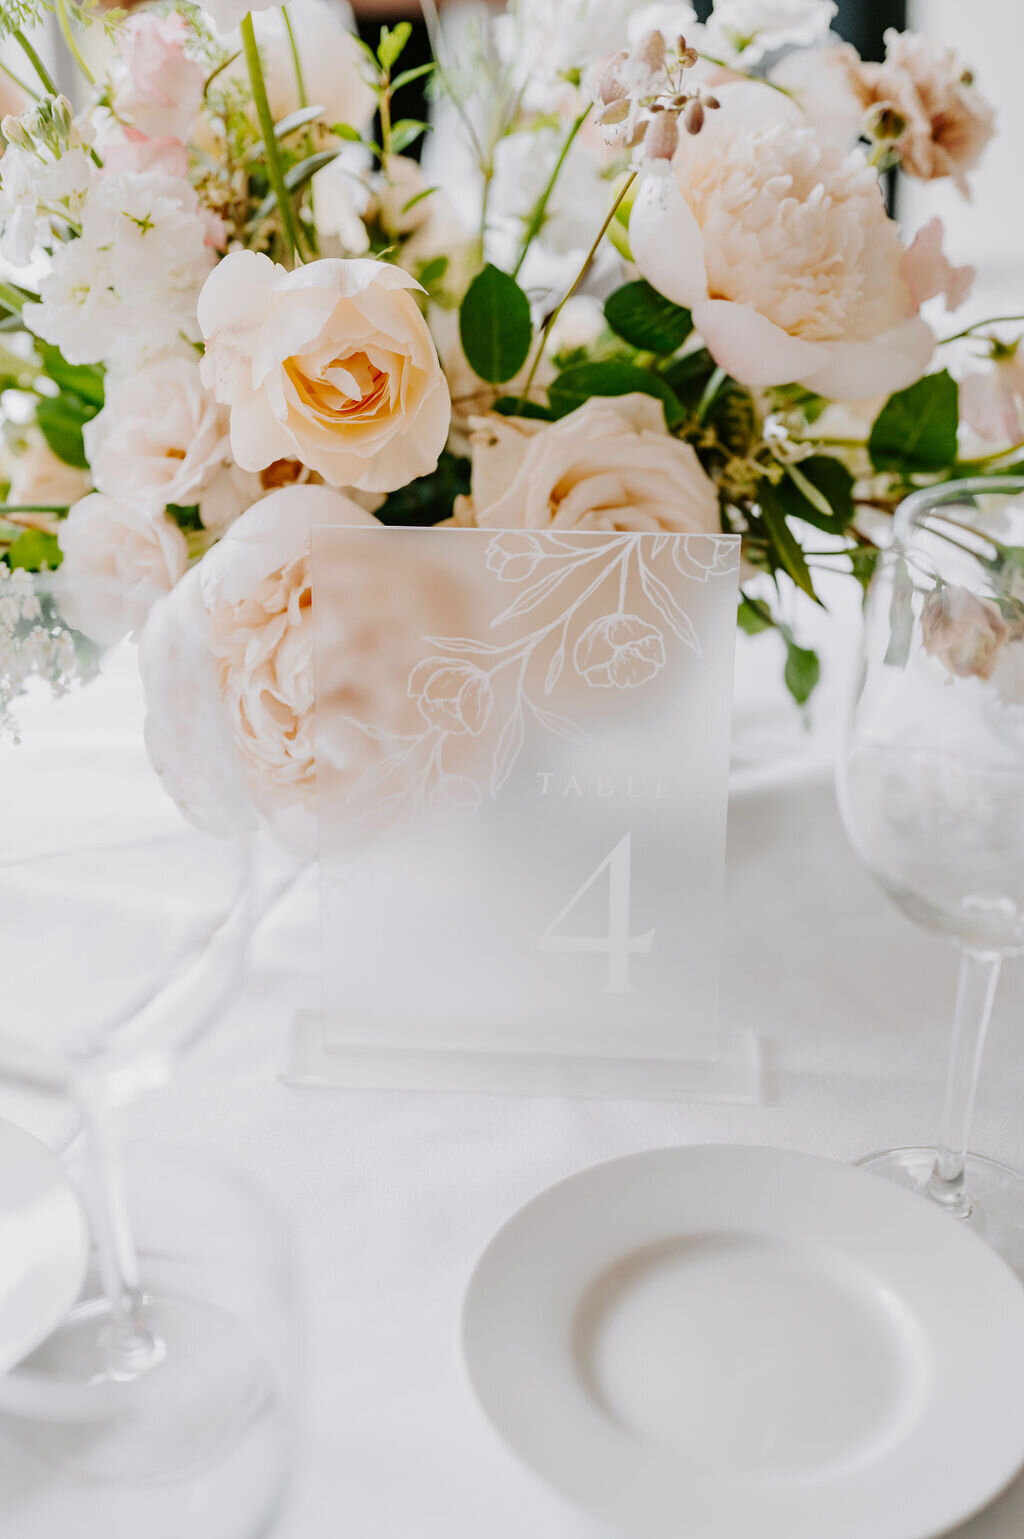 Wedding Table Decor Details - Wianno Club